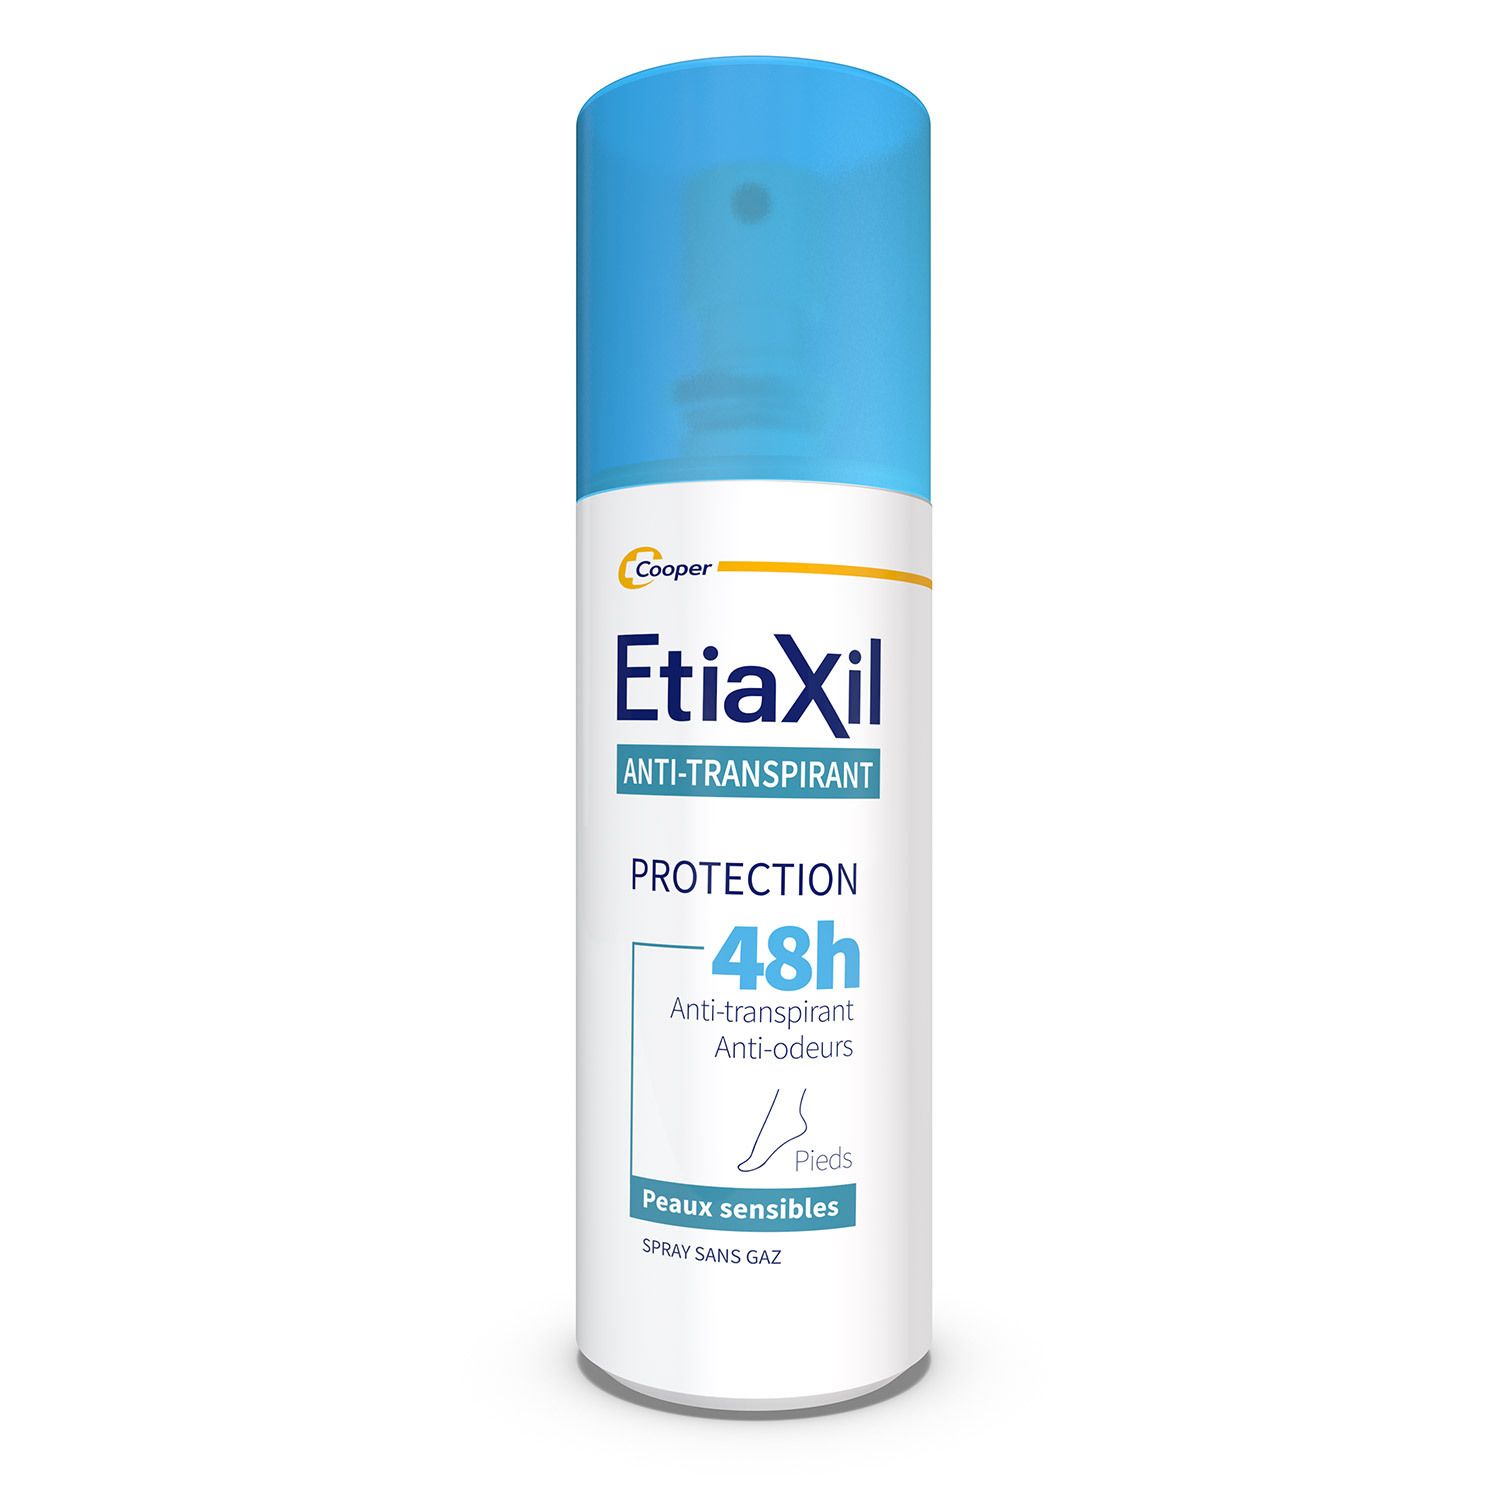 Etiaxil - Déodorant Anti-transpirant - Traitement Transpiration Modérée -Pieds - Protection 48h - Sp